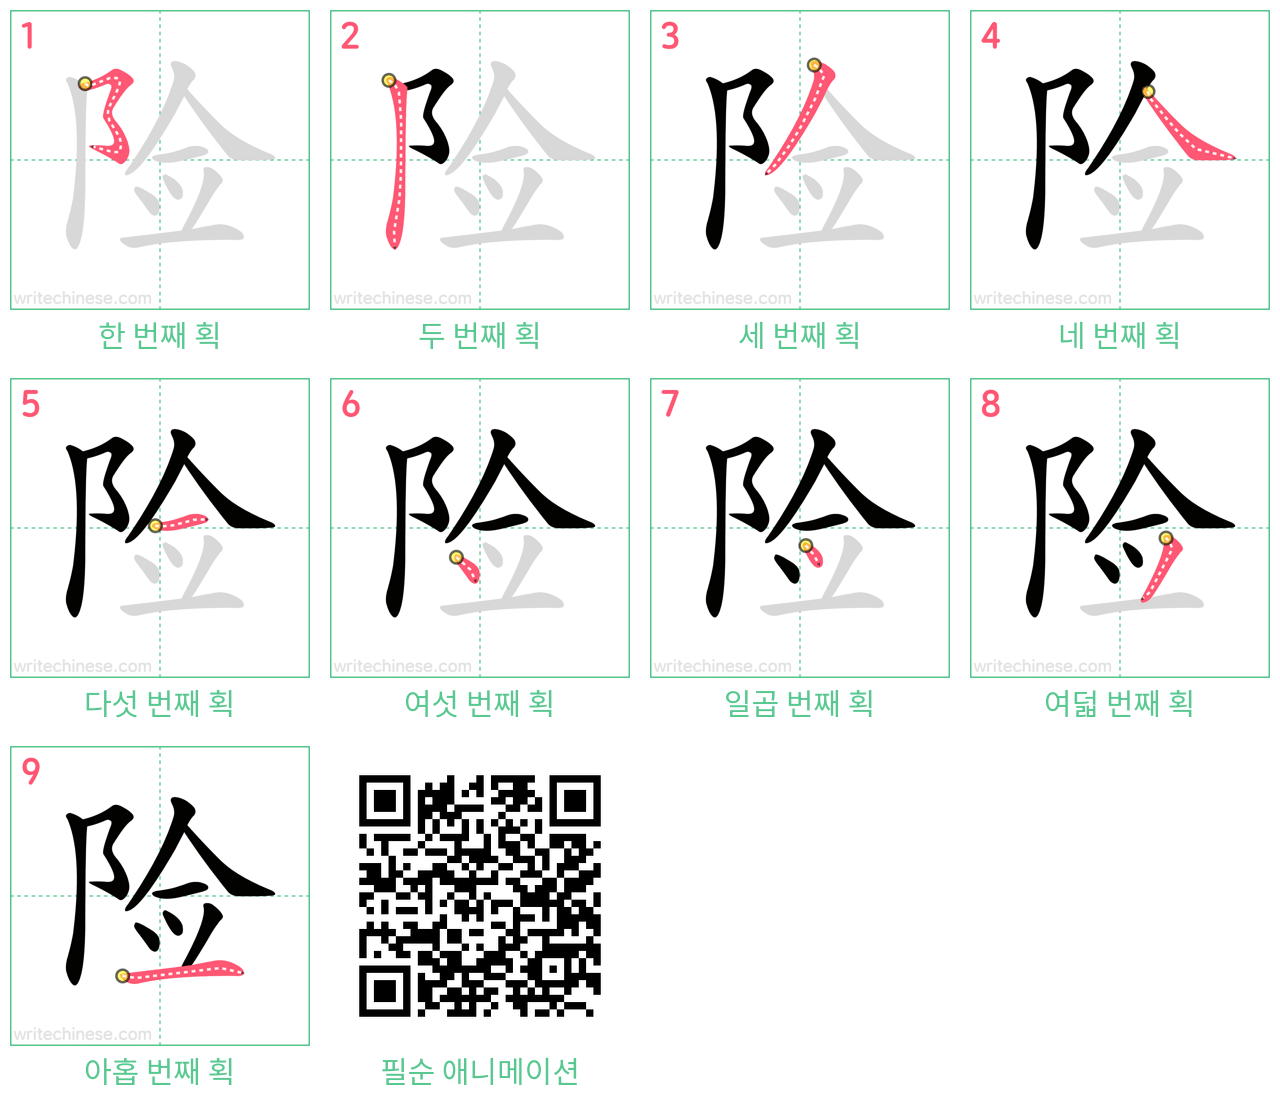 险 step-by-step stroke order diagrams